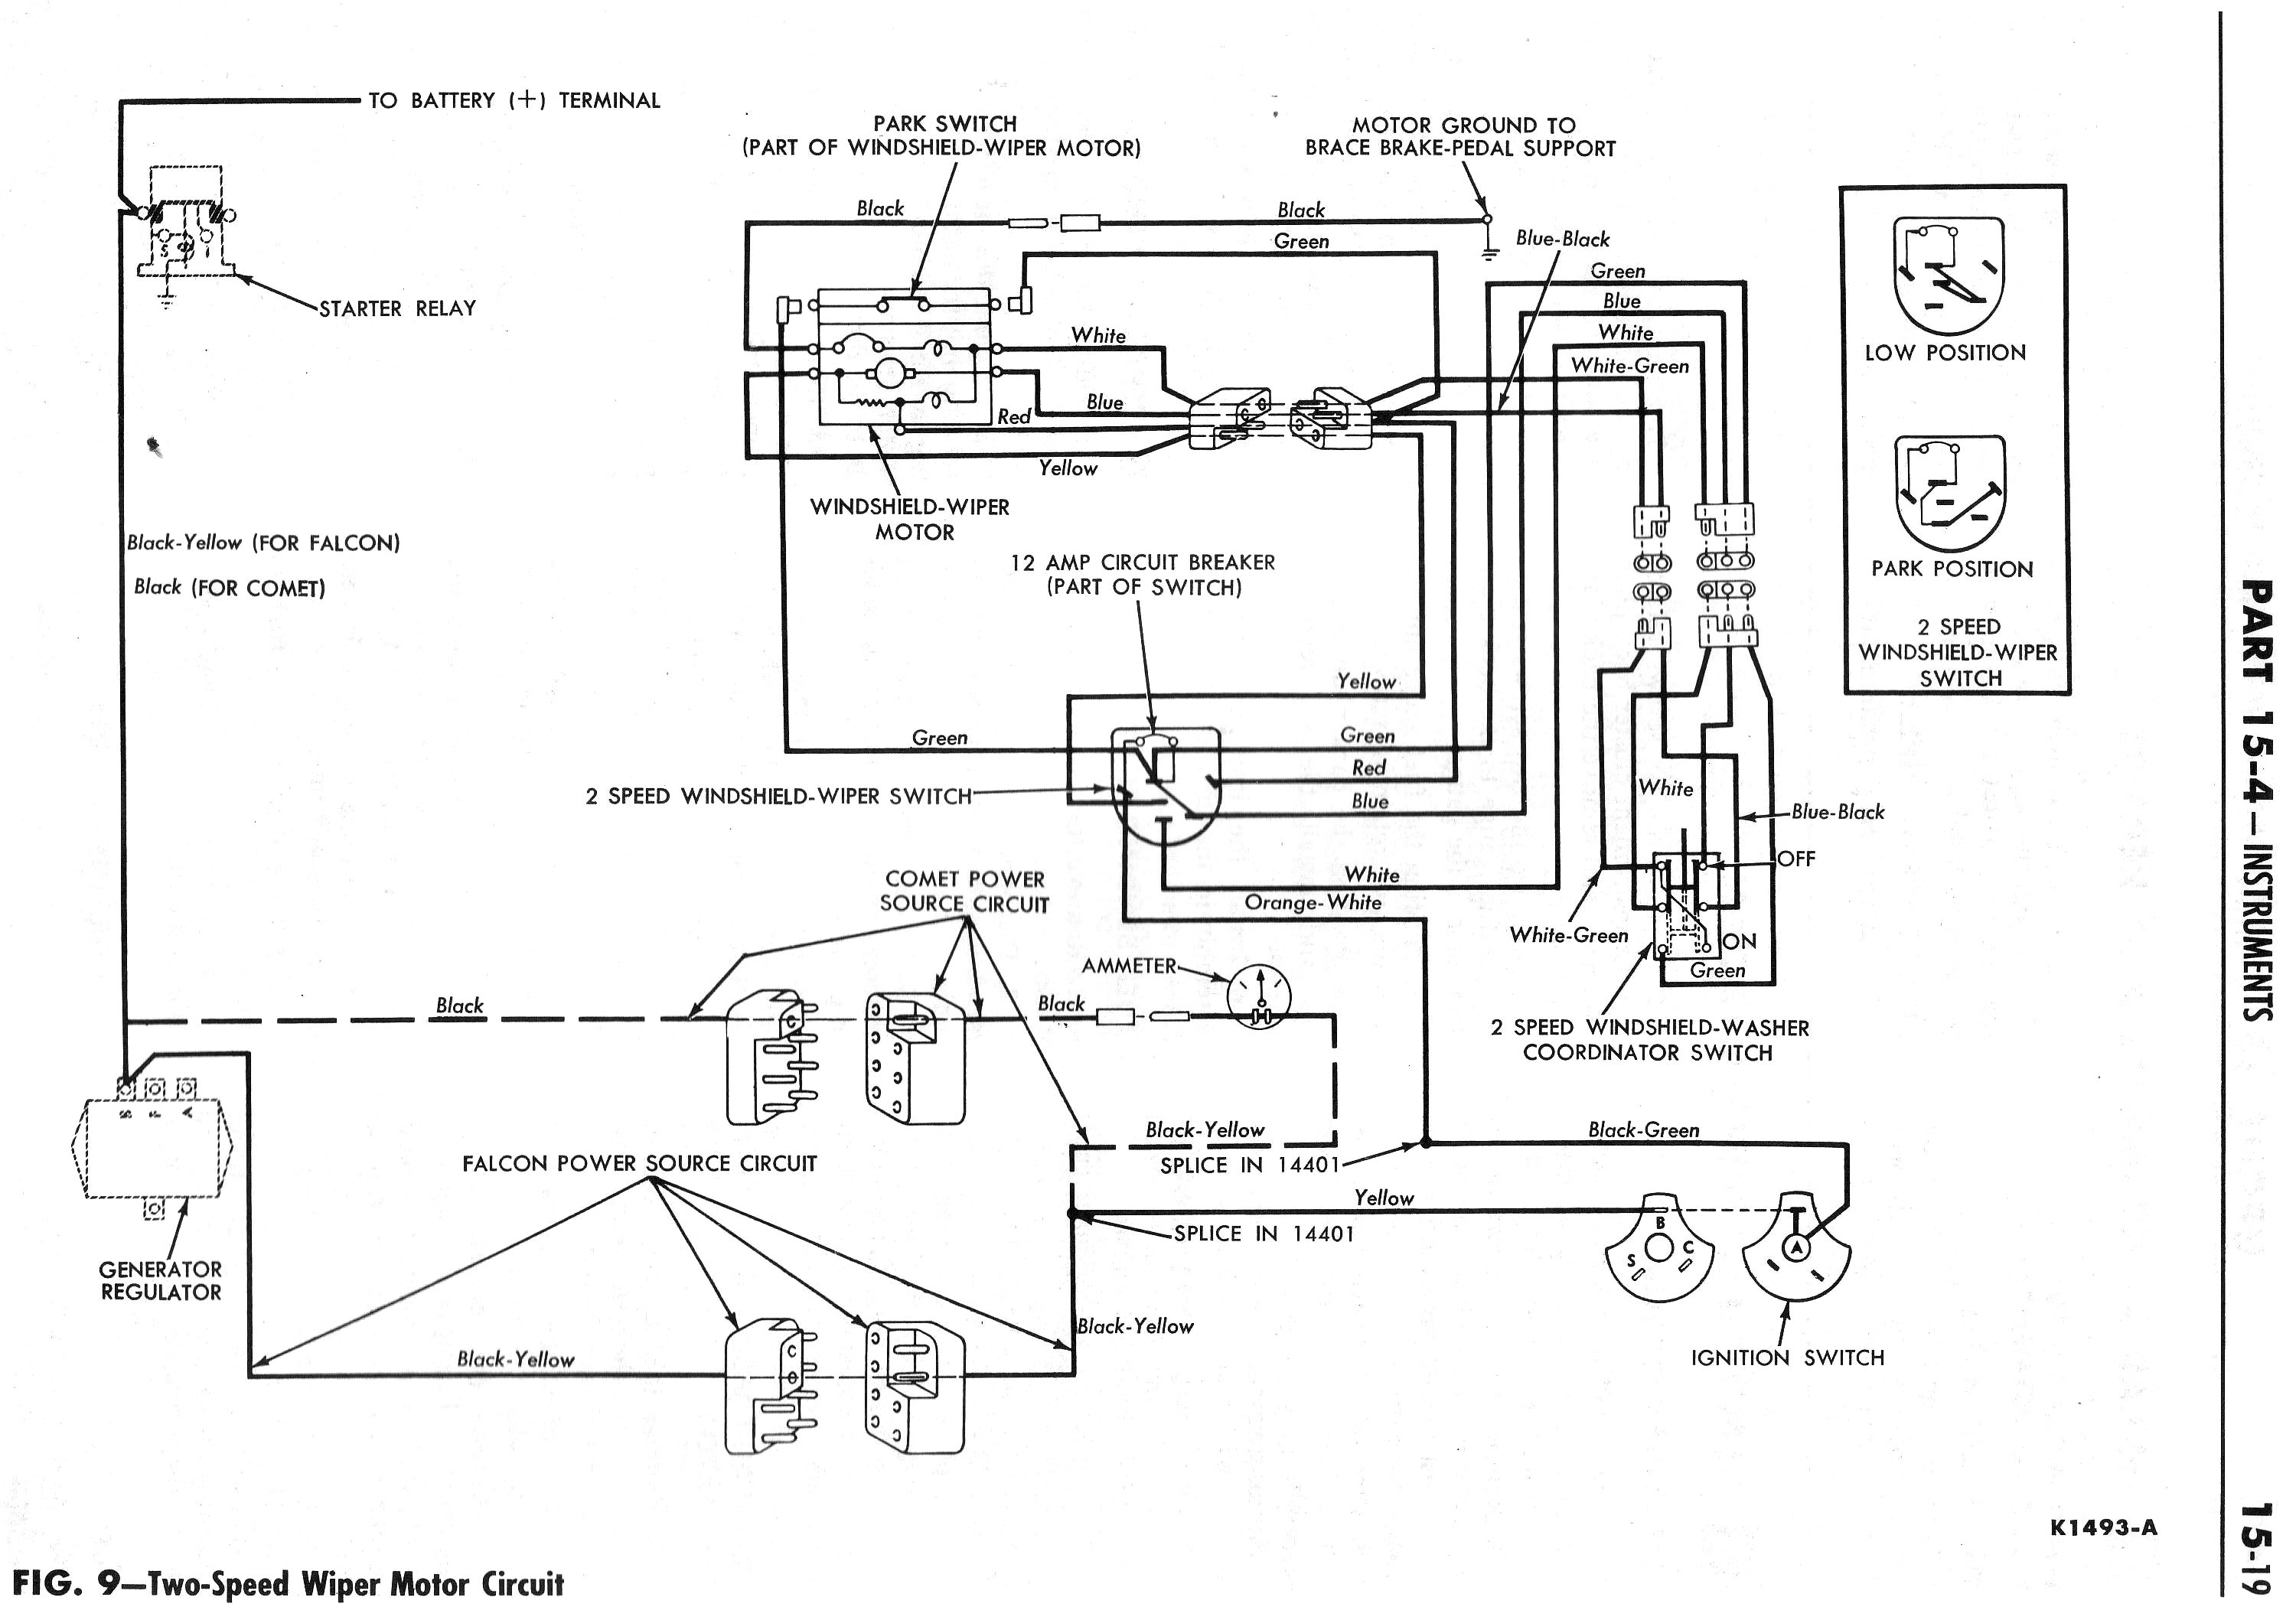 2003 Lincoln Town Car Air Suspension Wiring Diagram - Wiring Diagram